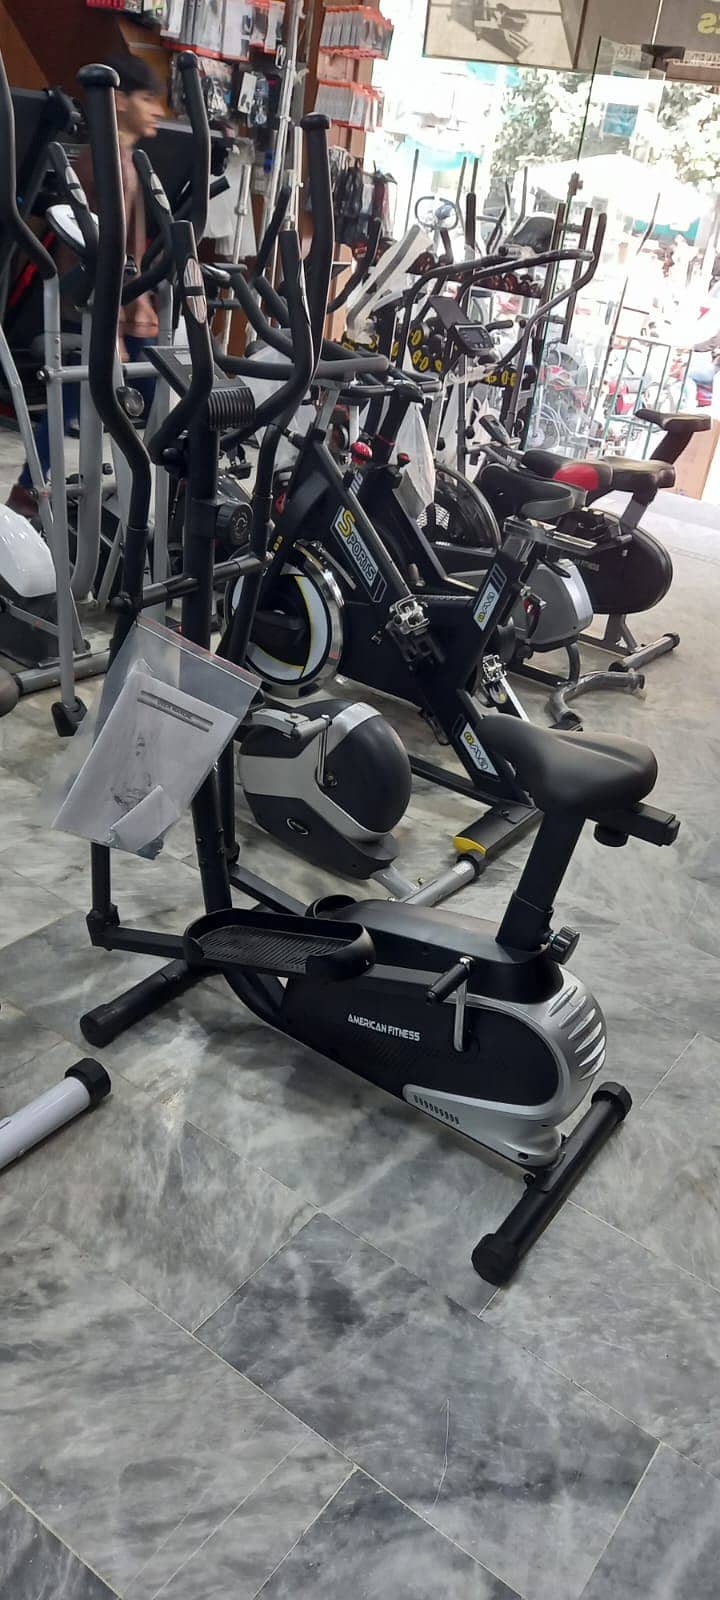 Exercise bike Elliptical Cros Trainer full body workout dumbbell plate 5